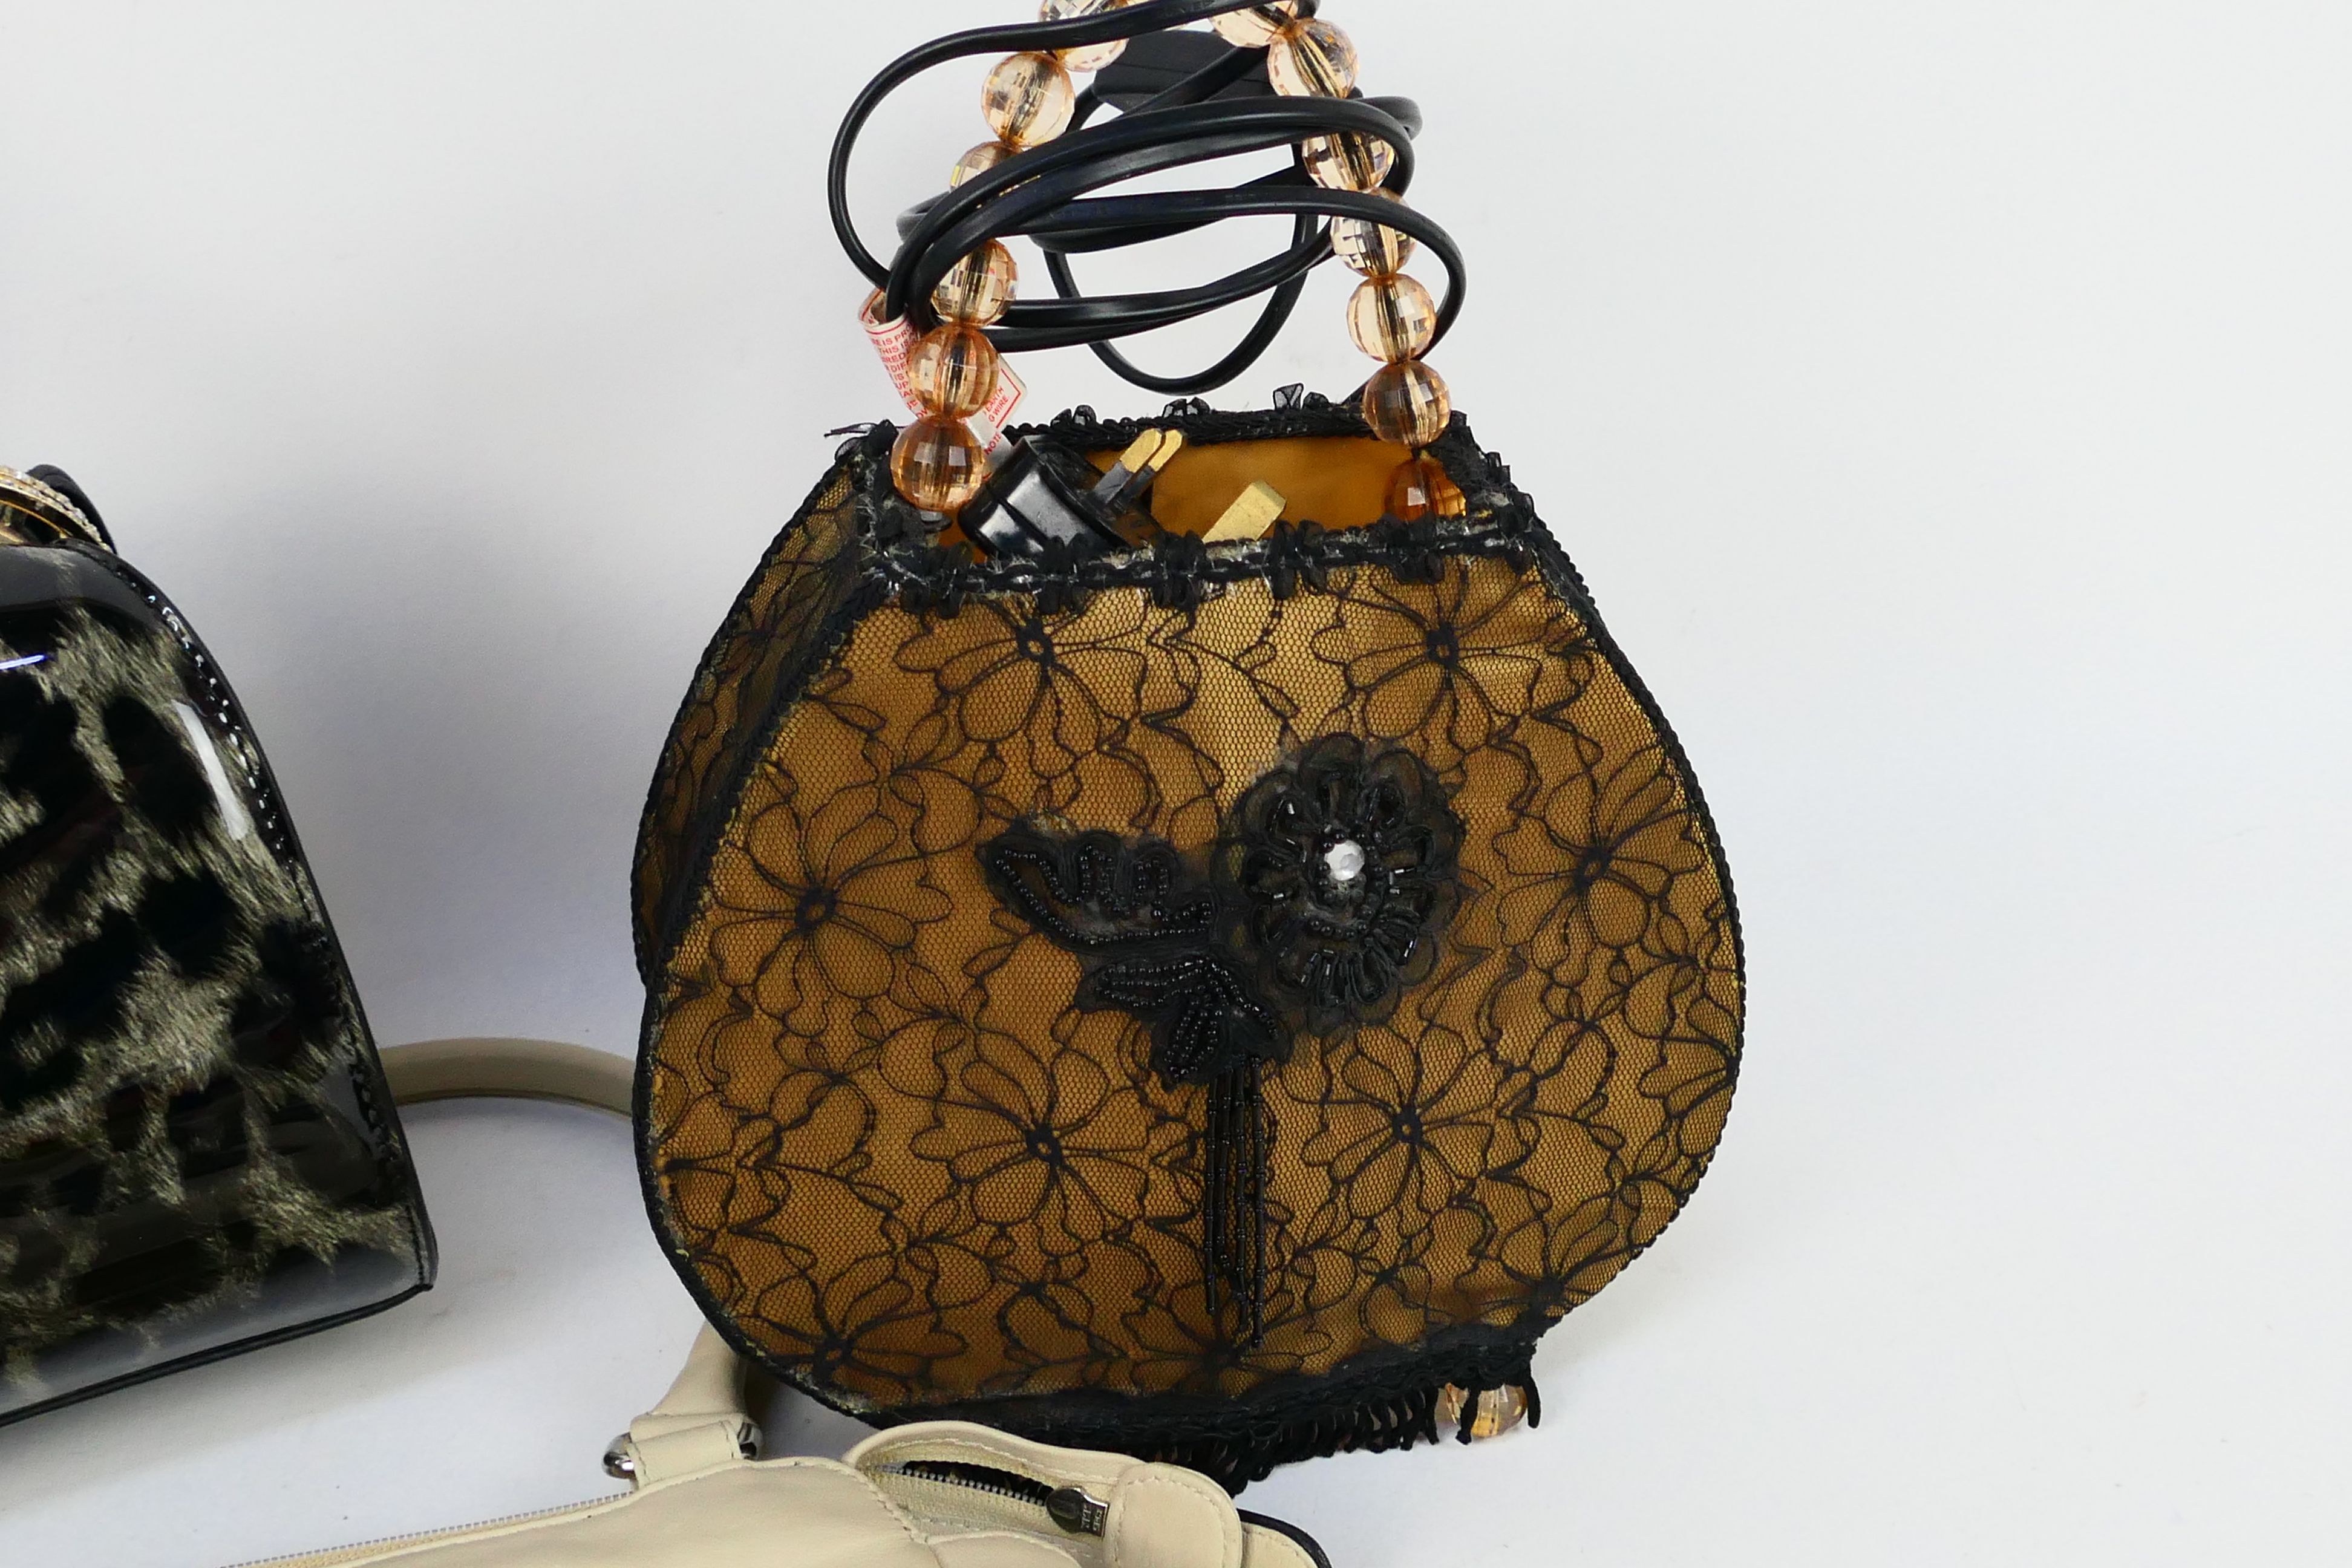 Debenhams - Hand bags - Hand Bag Lamp. - Image 3 of 4